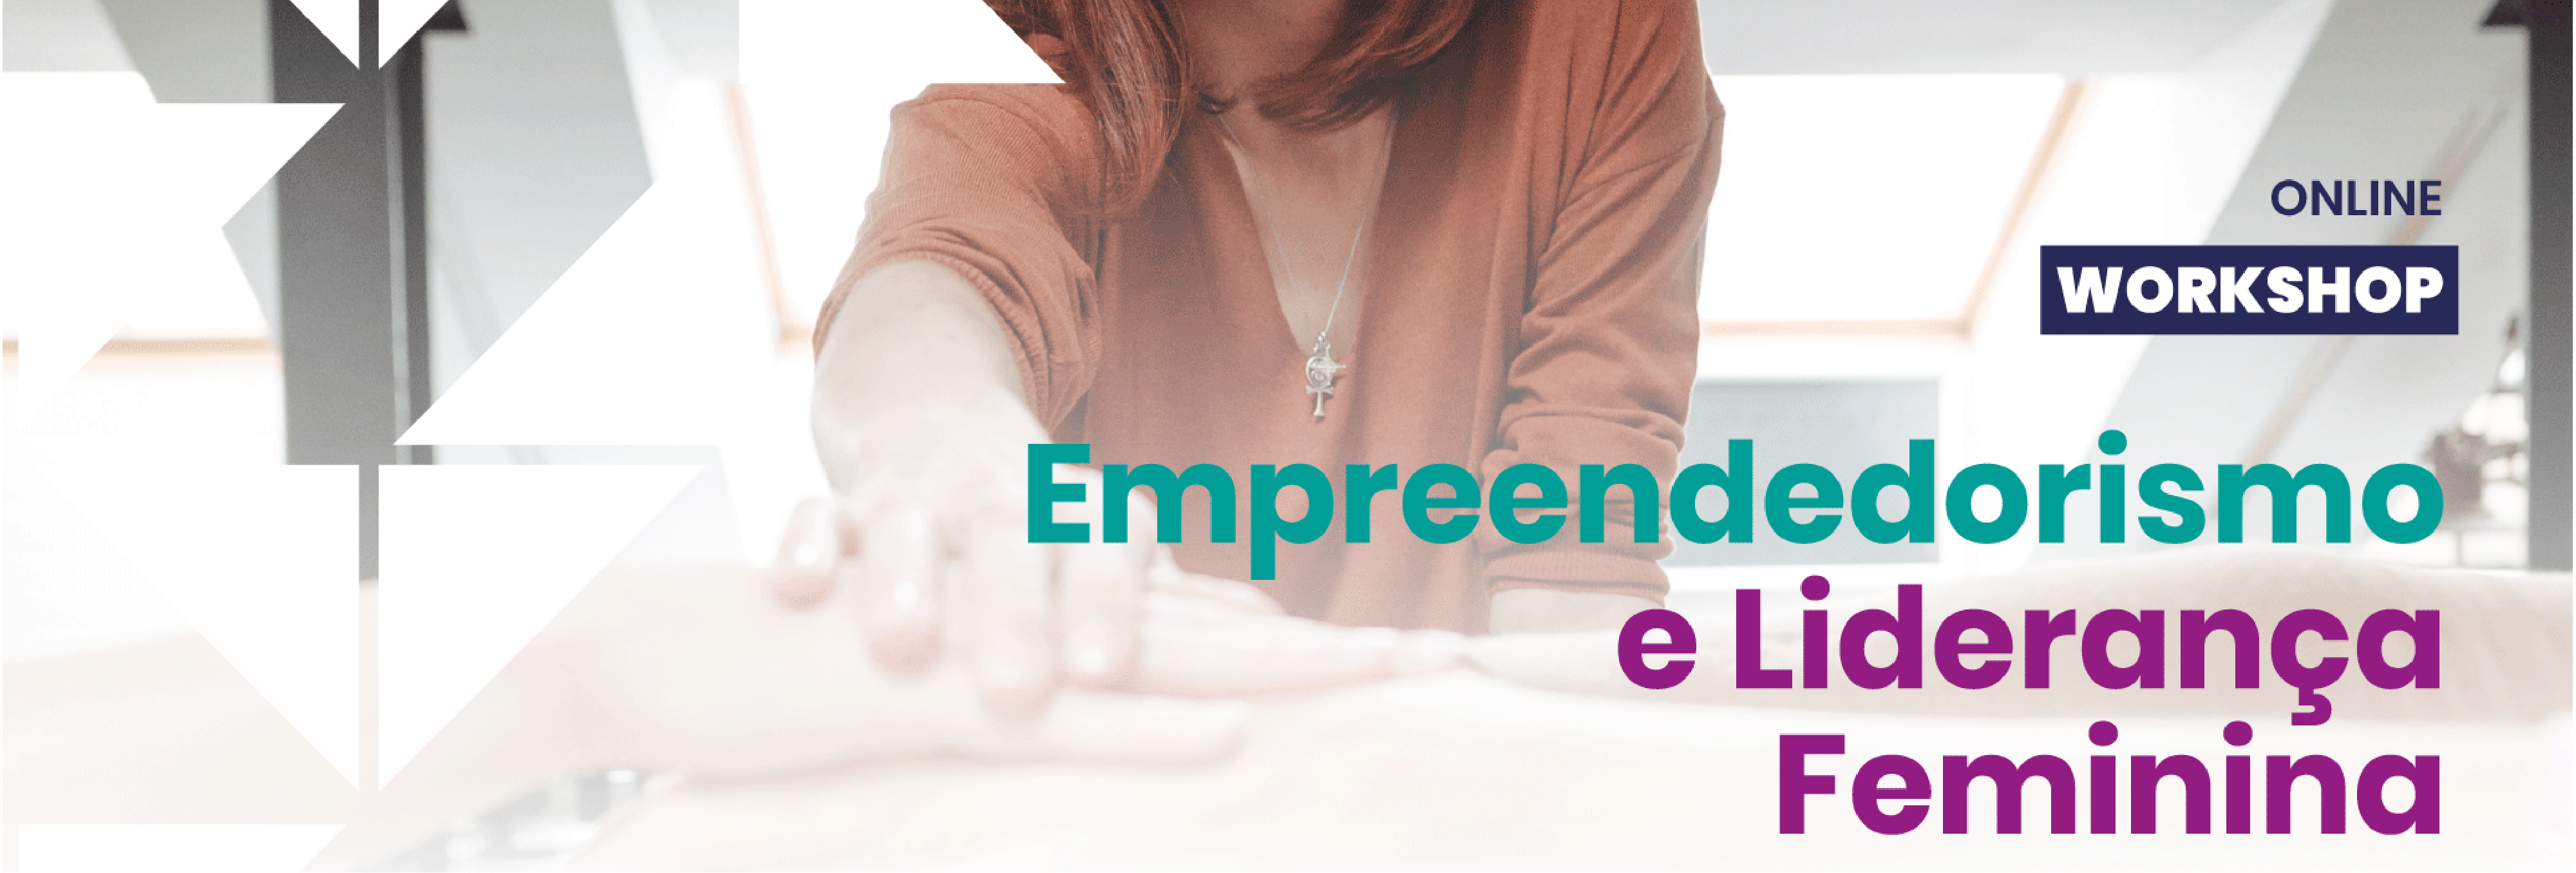 Workshop para Capacitação e Promoção do Empreendedorismo e da Liderança Feminina